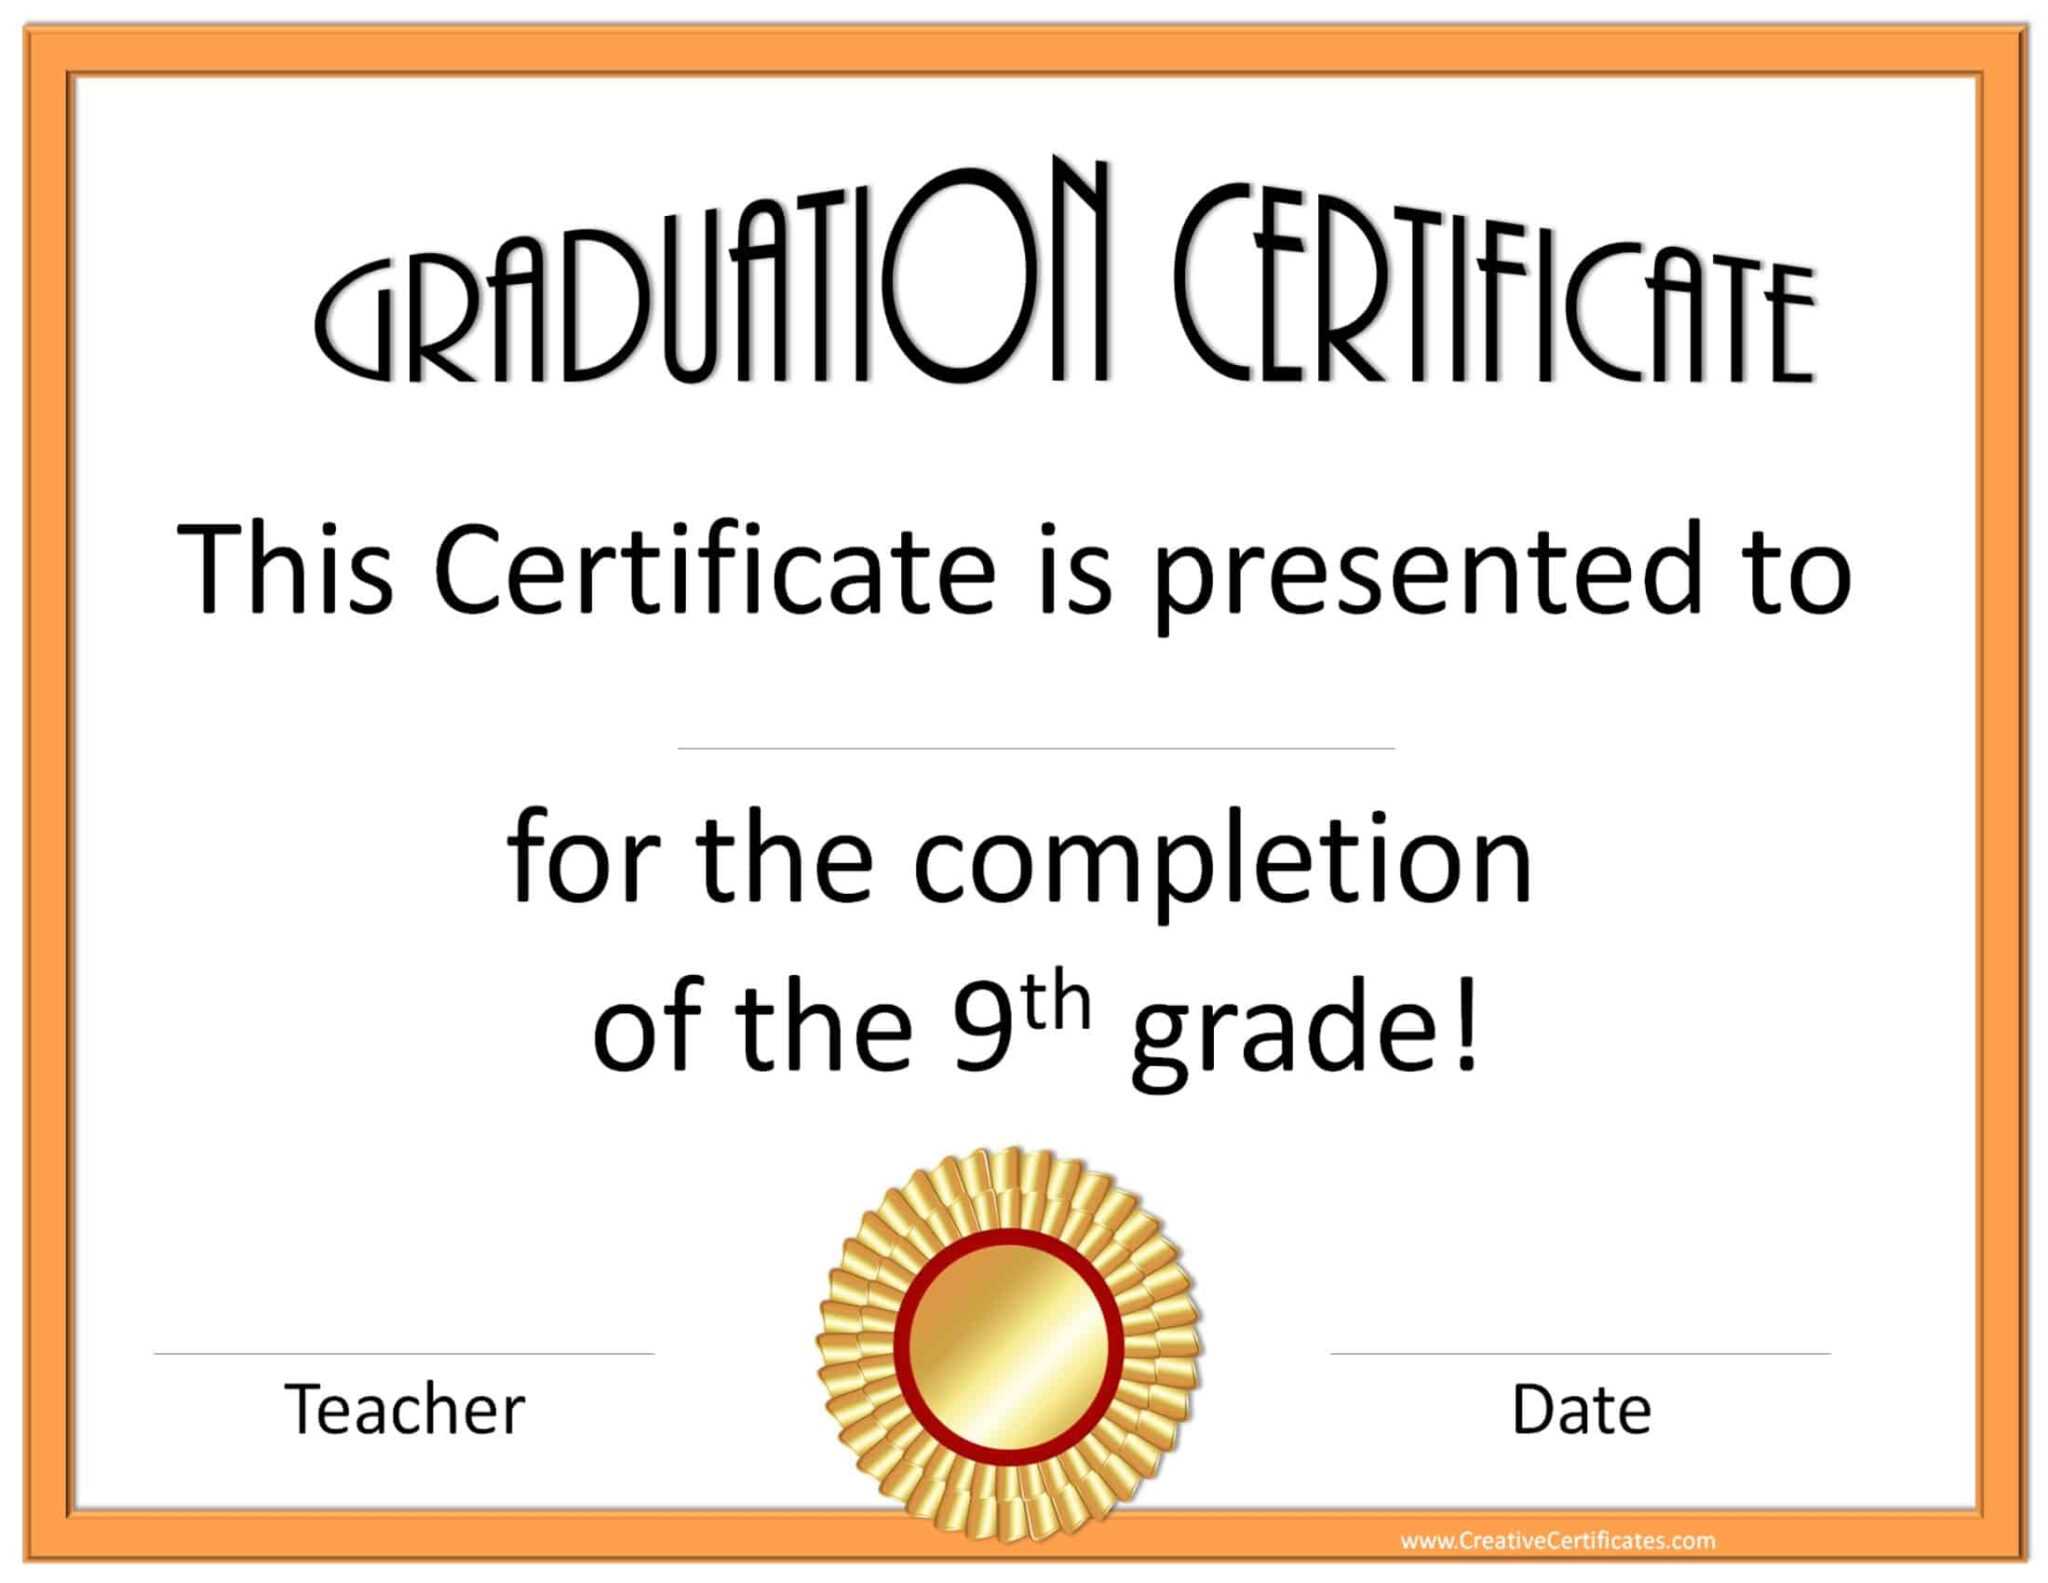 5th-grade-graduation-certificate-template-diplomas-free-in-5th-grade-graduation-certificate